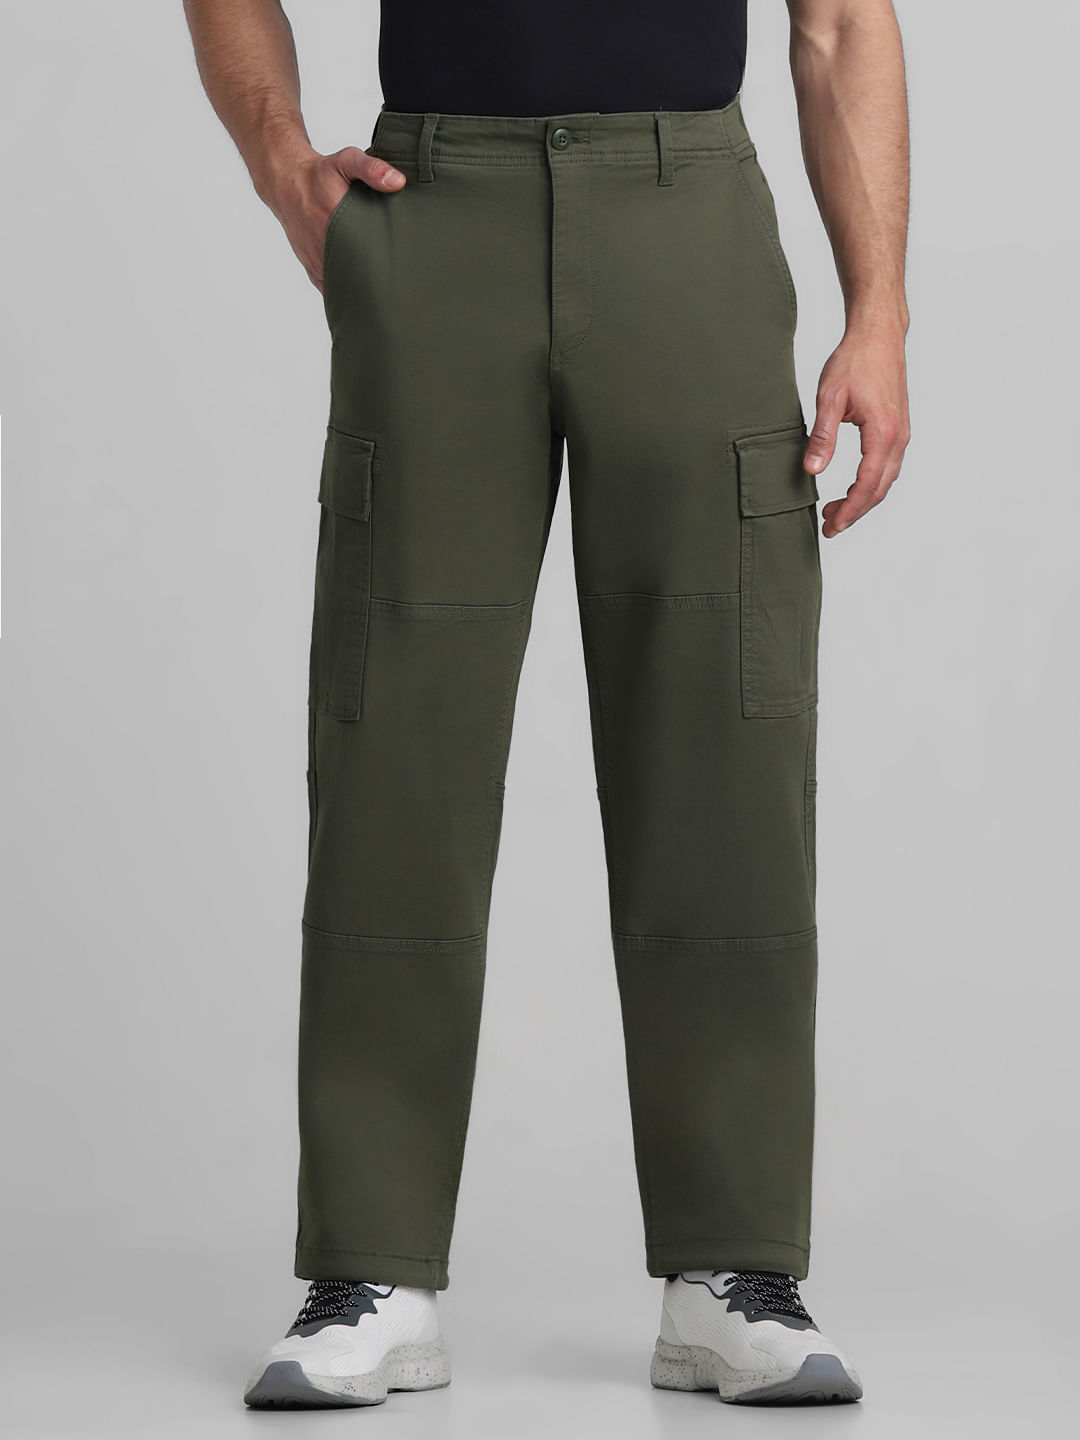 Serape Bootcut Cargo Pants - Camo | Bootcut, Best cargo pants, Cargo pants